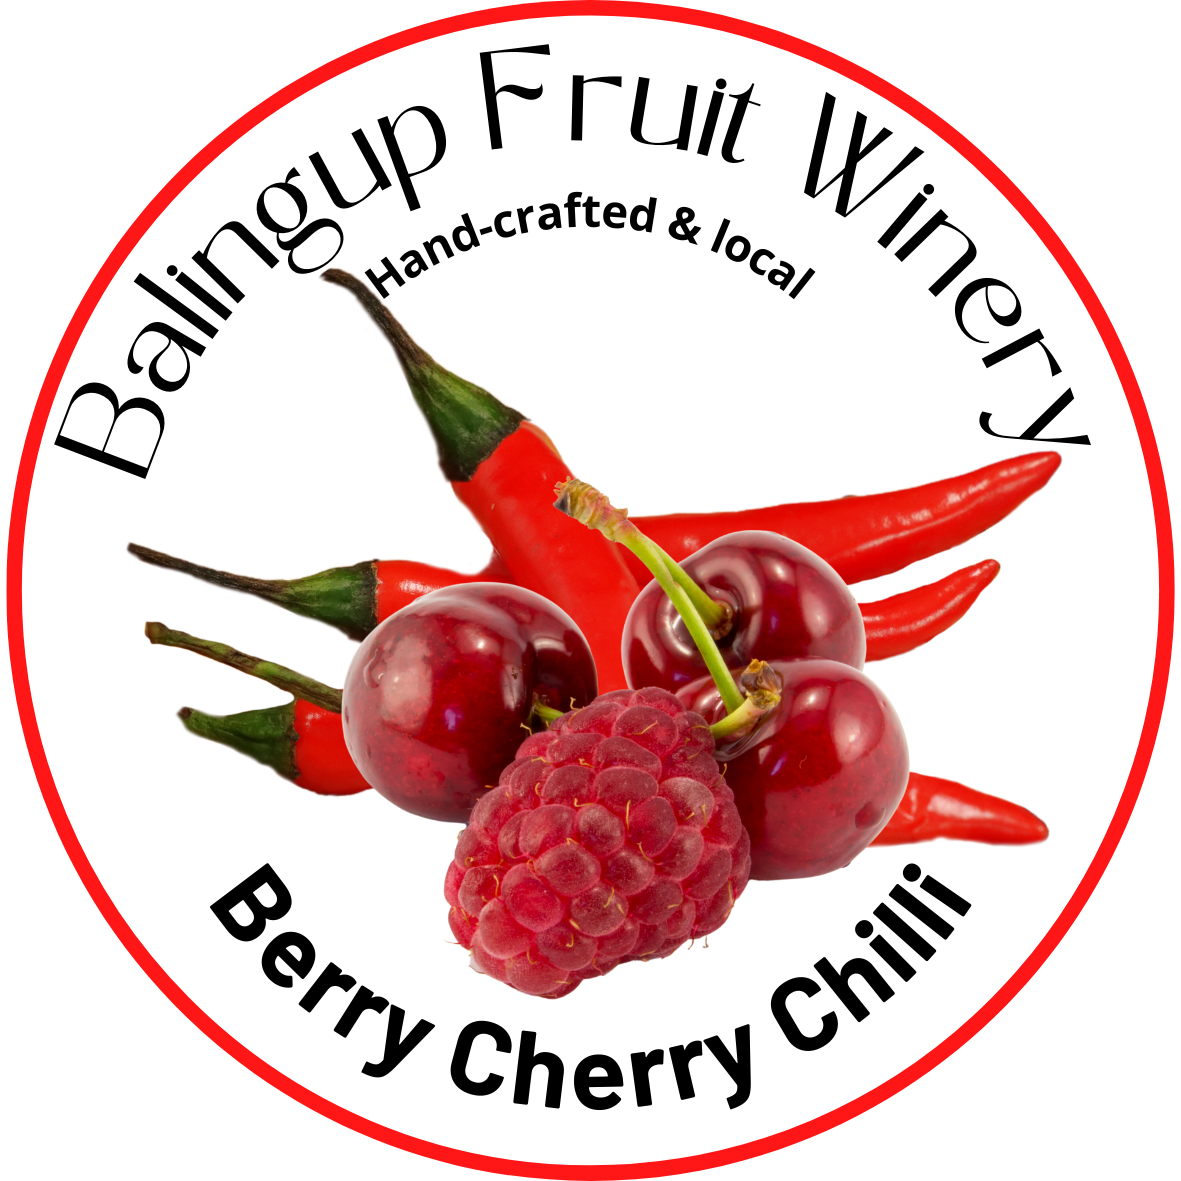 Berry Cherry Chilli